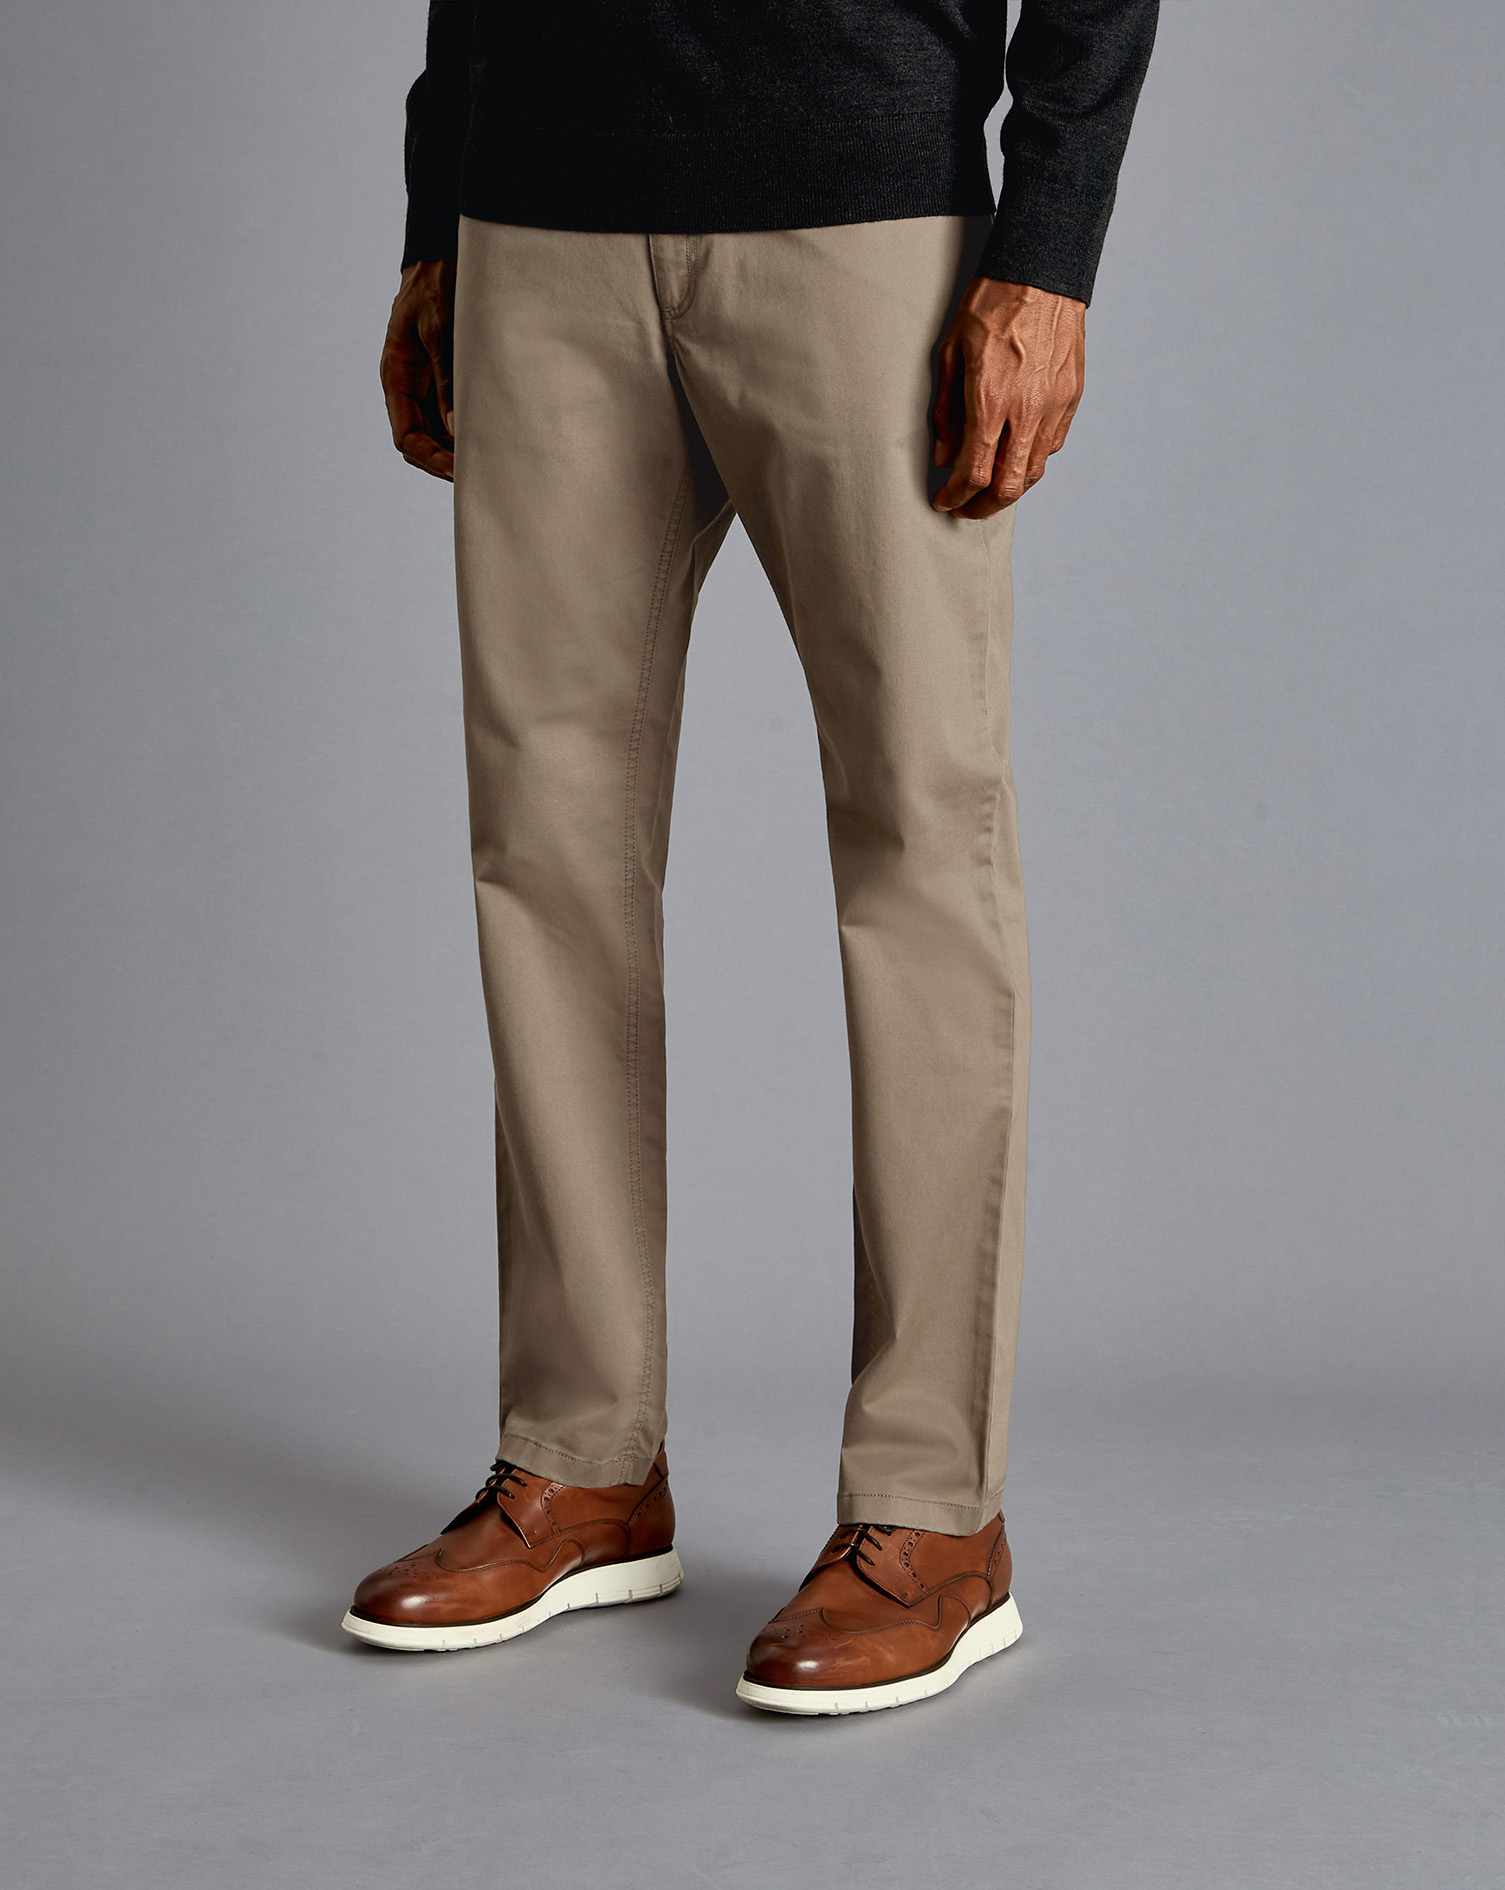 Men's Charles Tyrwhitt Stretch 5-Pocket Trousers - Mocha Brown Size W30 L30 Cotton
